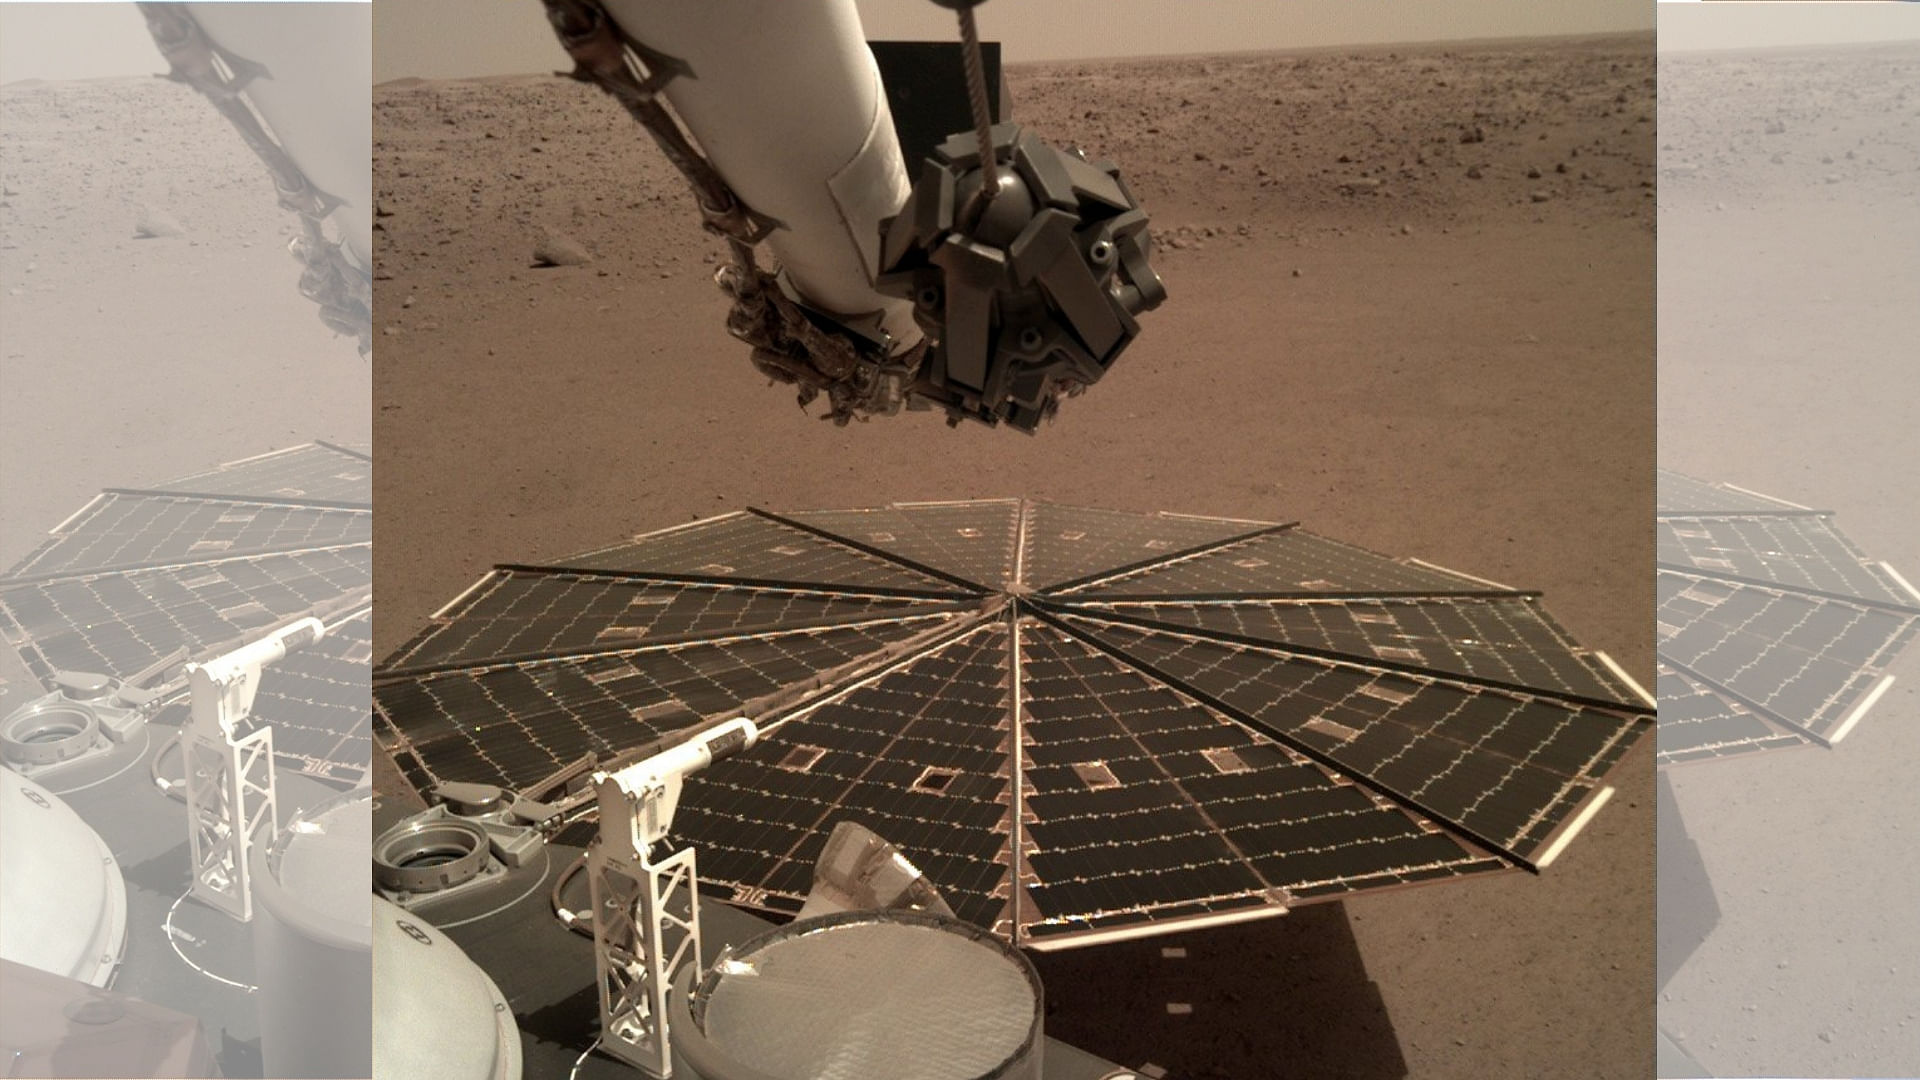 InSight landed on Mars on 26November, 2018.